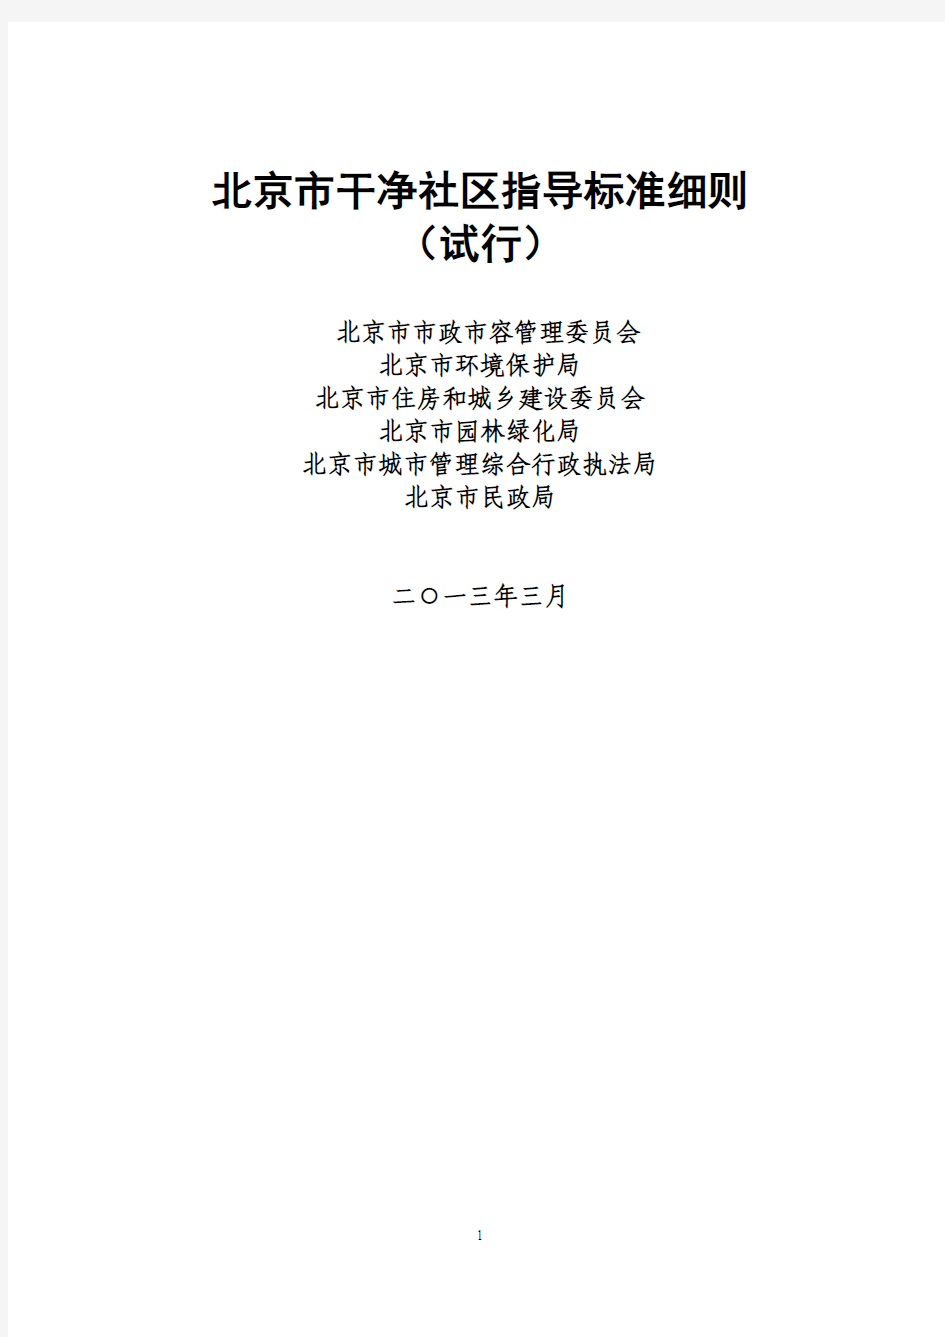 新 北京市六型社区指导标准细则合订(402定)